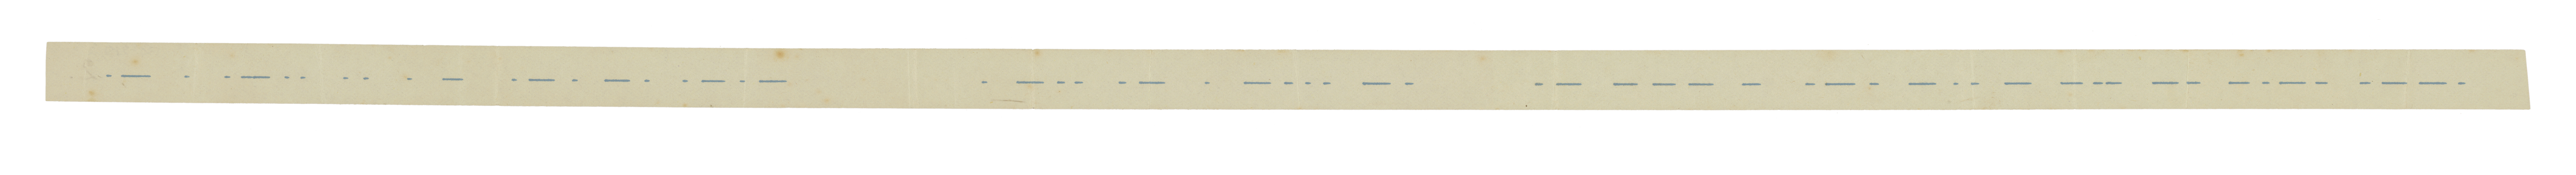 Morse Code final test slip, Across the Atlantic Ocean (front)